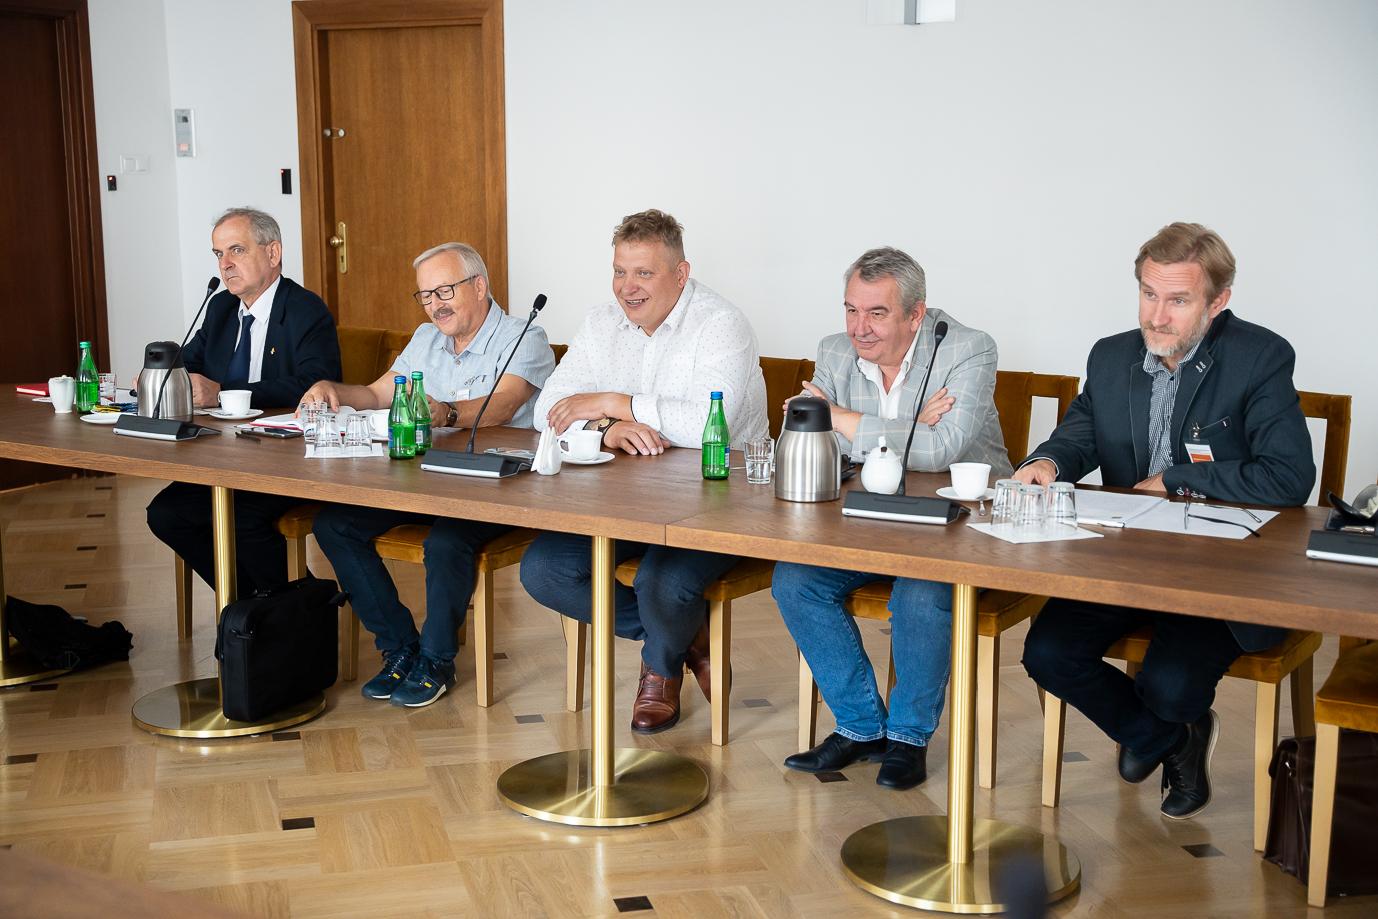 Członkowie OPZZ - Związek Zawodowy Pracowników Rolnictwa podczas spotkania w MRiRW (fot. MRiRW)